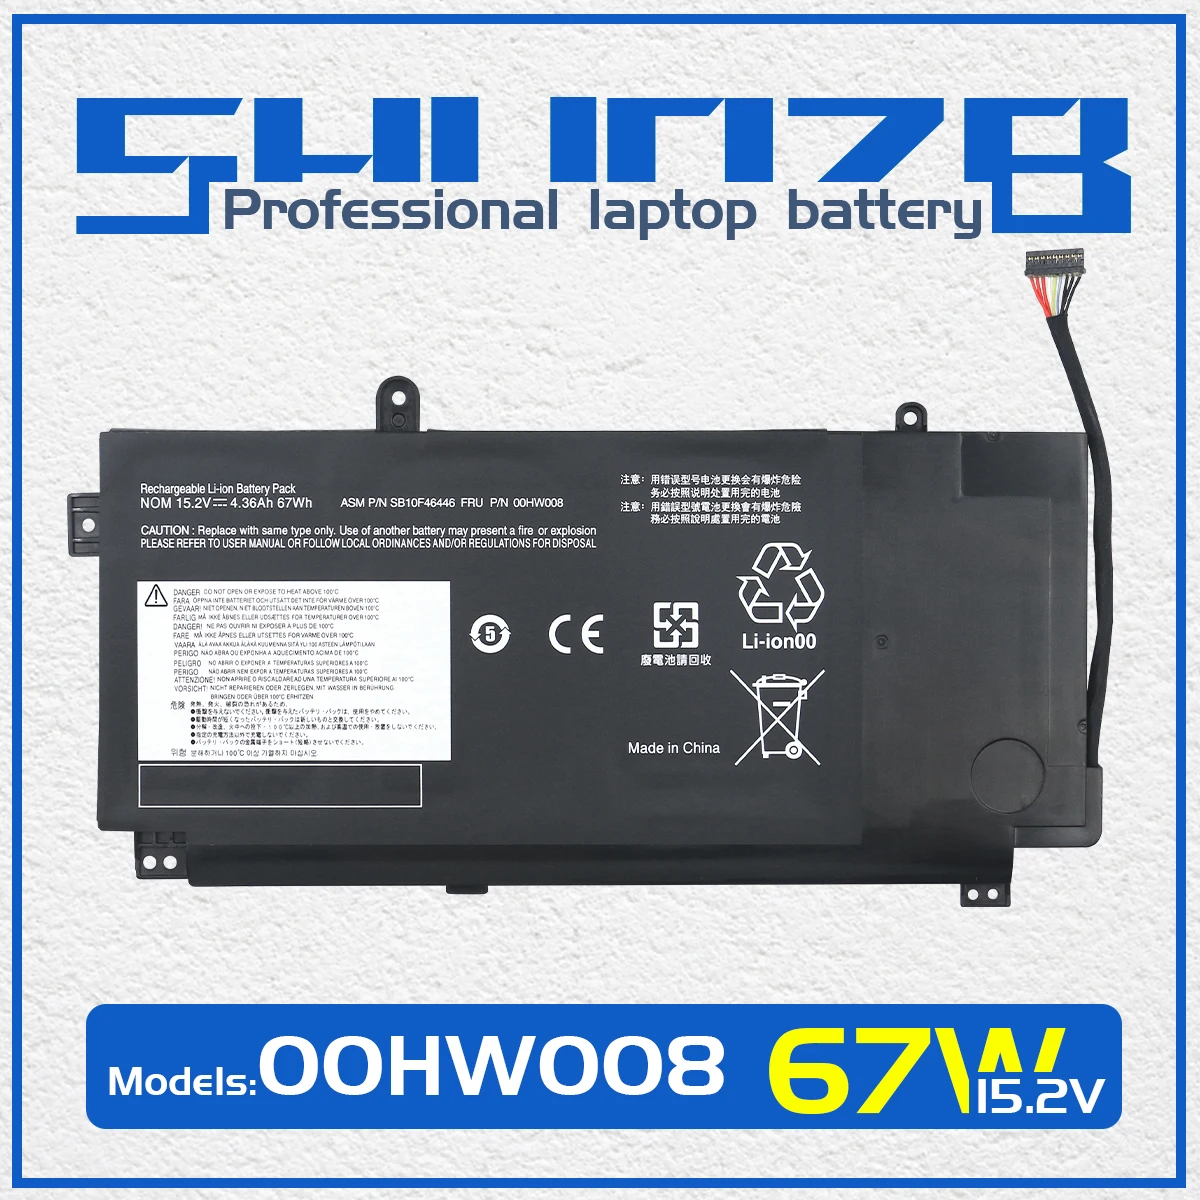 

SHUOZB 00HW008 Battery For Lenovo ThinkPad Yoga 15 20DQ0038GE 20DRS02AGE 20DQ003RGE 20DQ 20DR SB10F46446 4ICP6/58/92 15.1V 66Wh